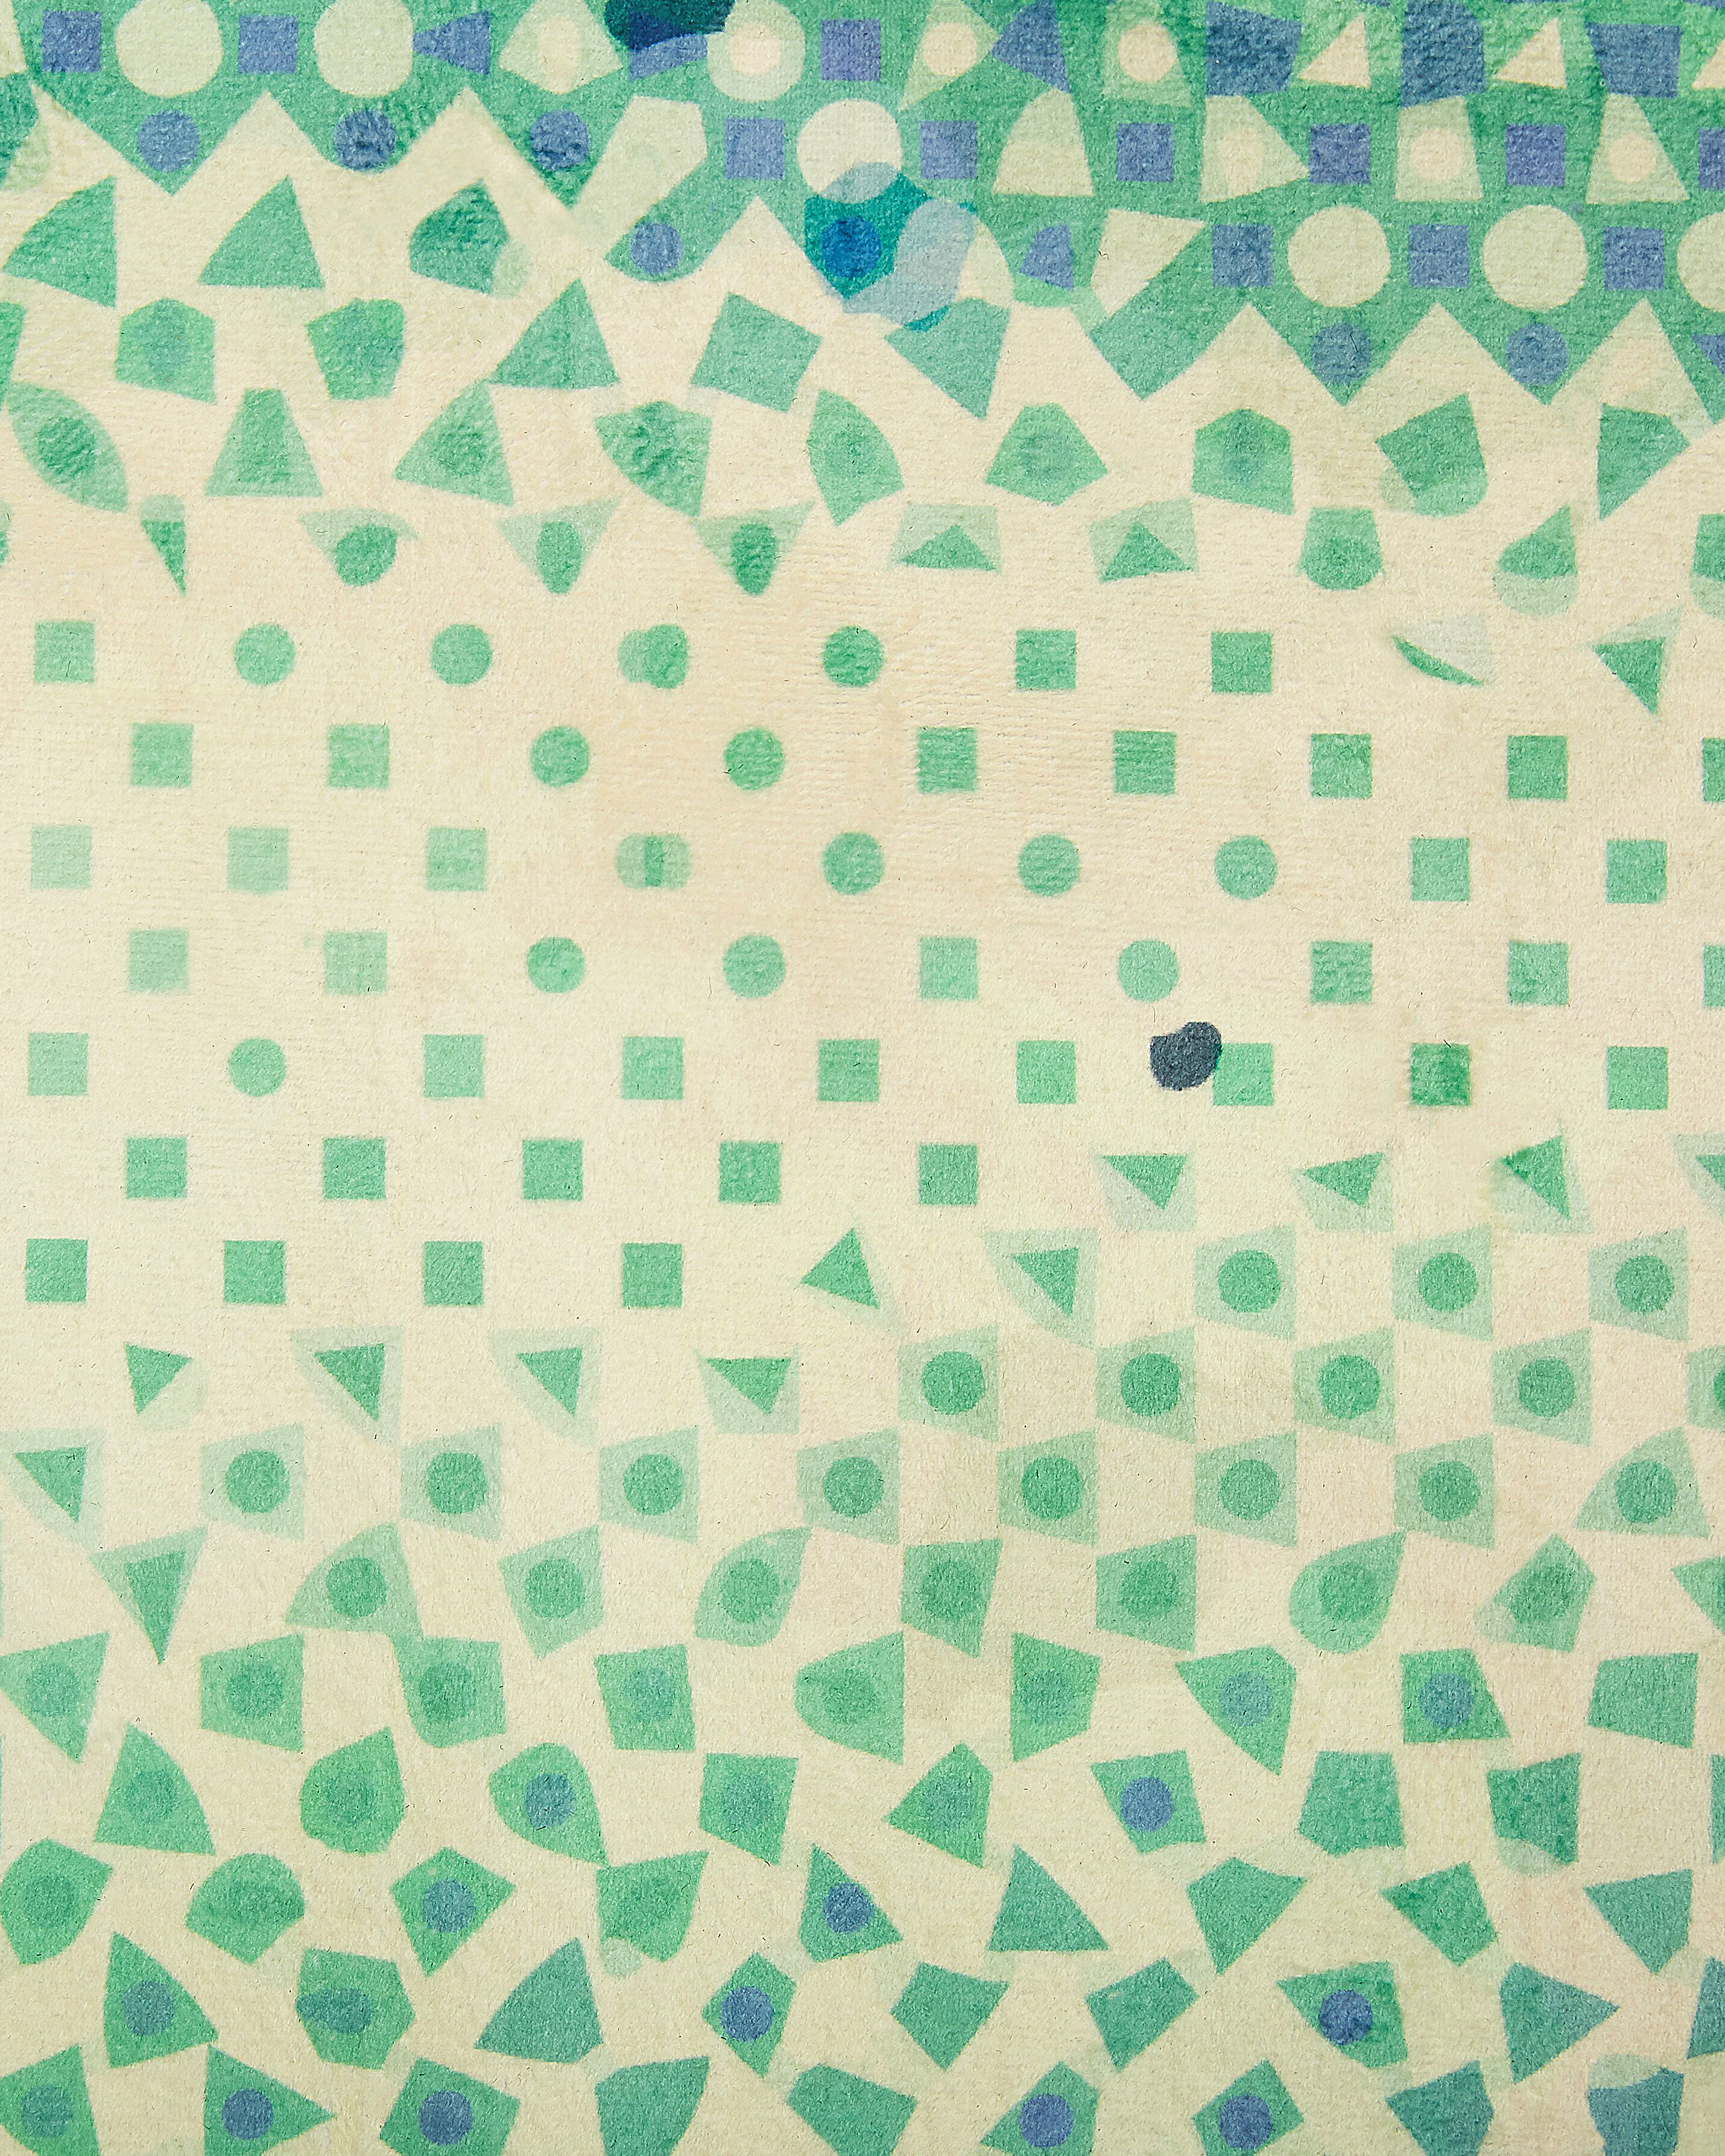 Vloerkleed polyester blauw/groen 140 x 200 cm SUSUZ_799209